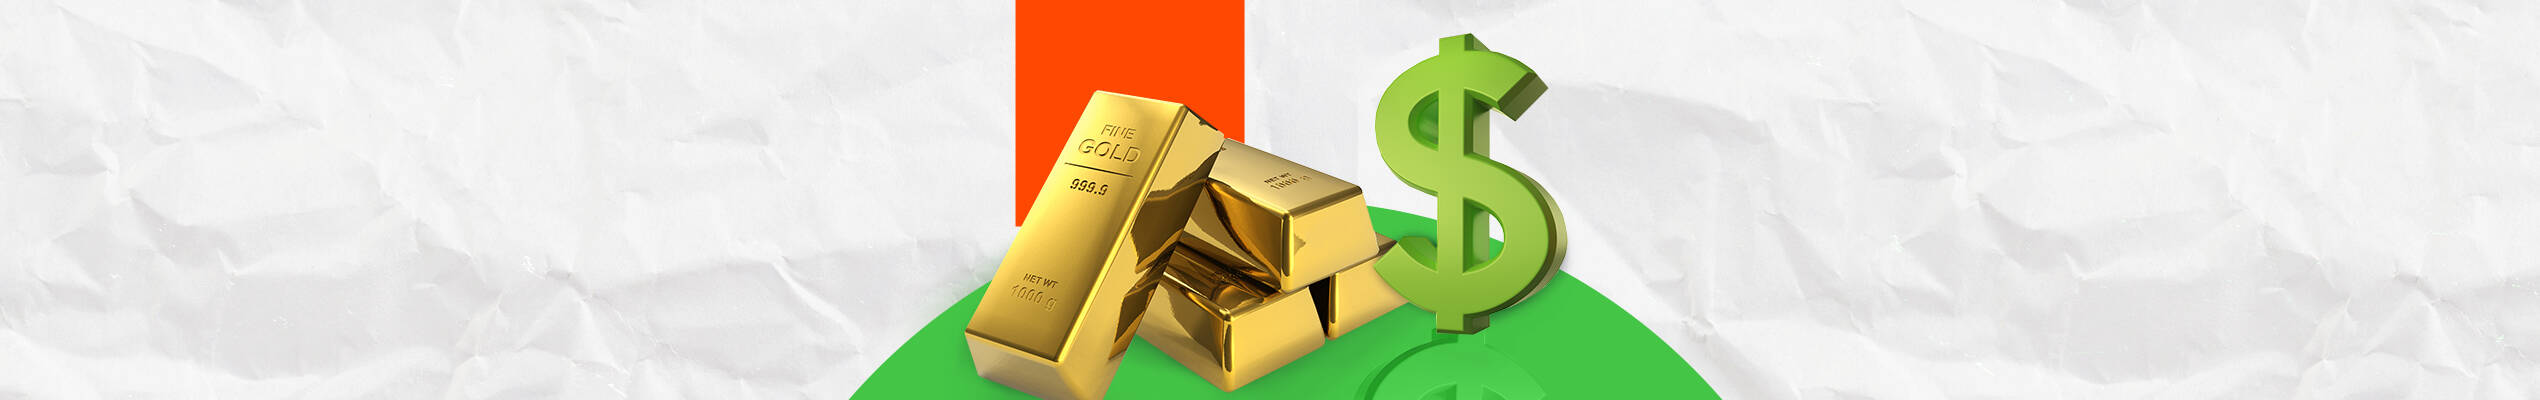 الذهب: مستقبل محتوم عند 1800 دولار 